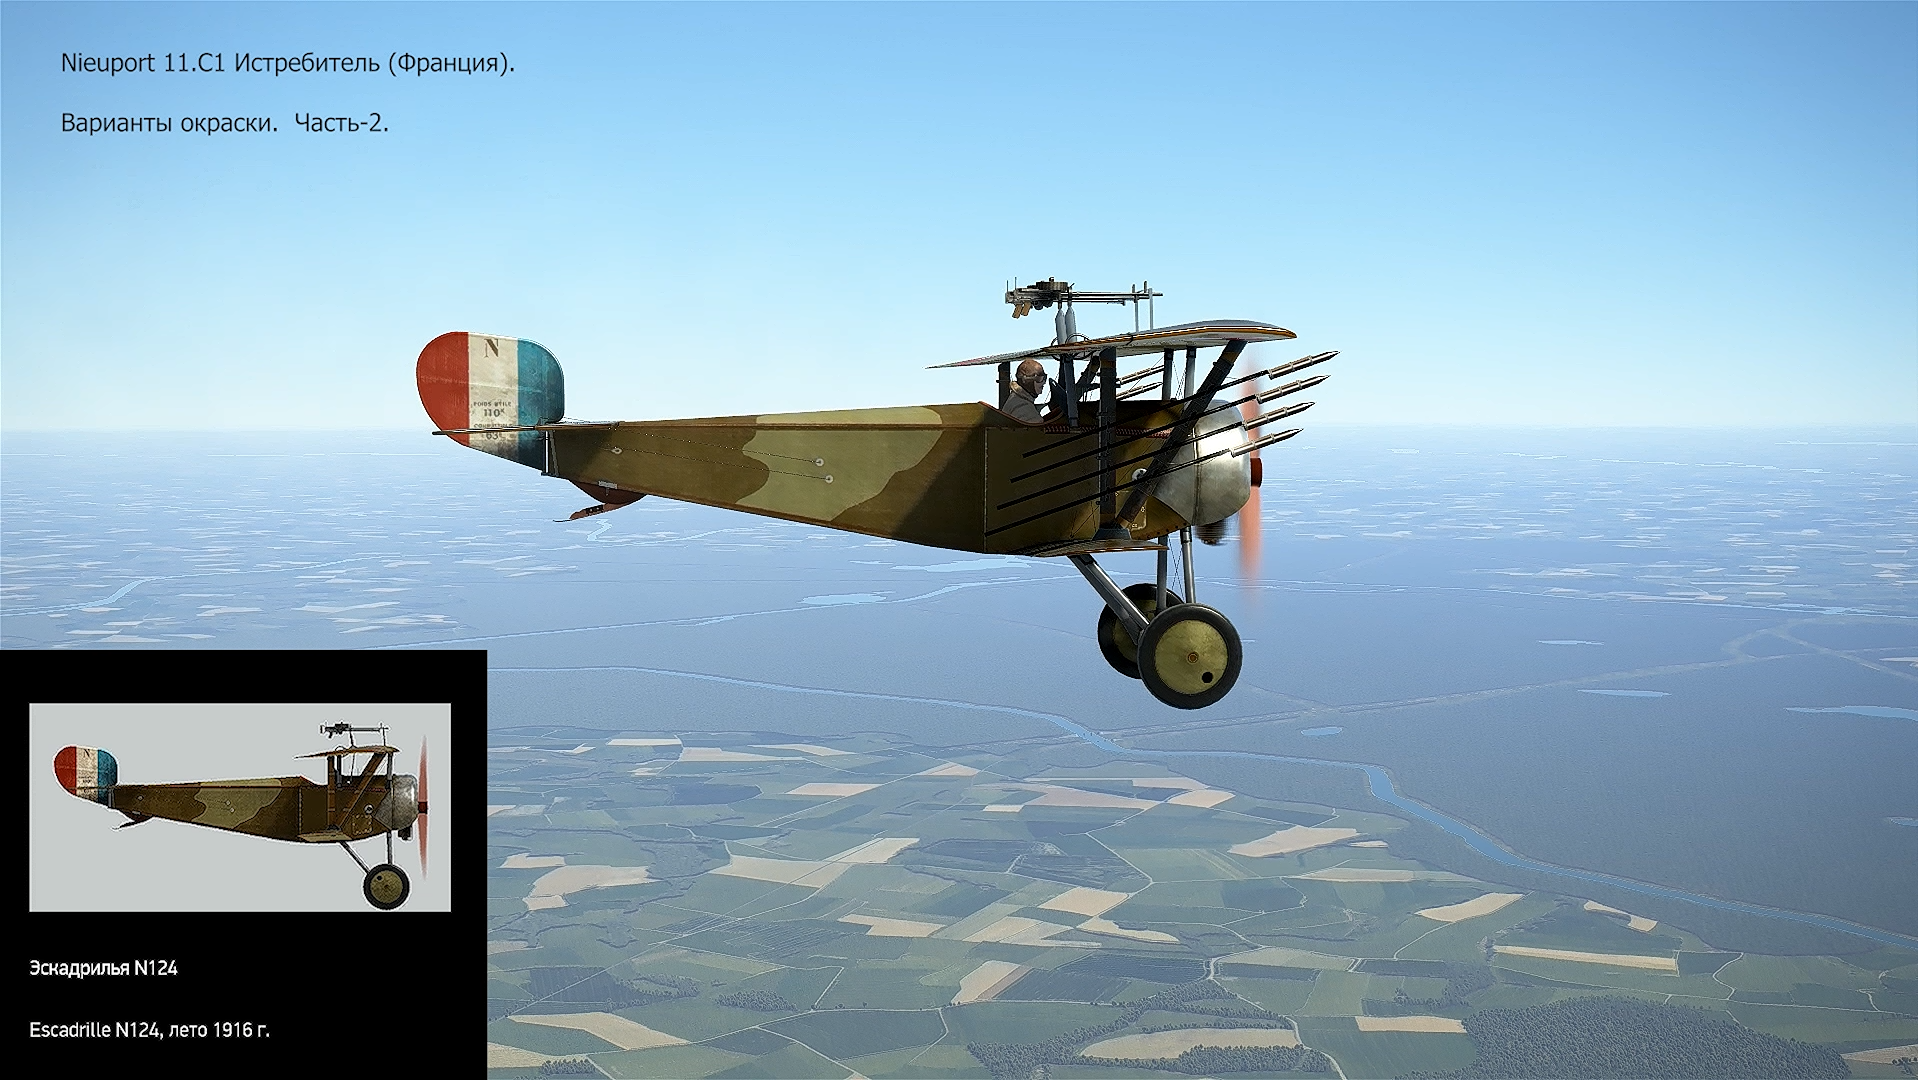 Nieuport 11.C1 Истребитель (Франция). Варианты окраски. Часть-2. Симулятор «Flying Circus – ll".